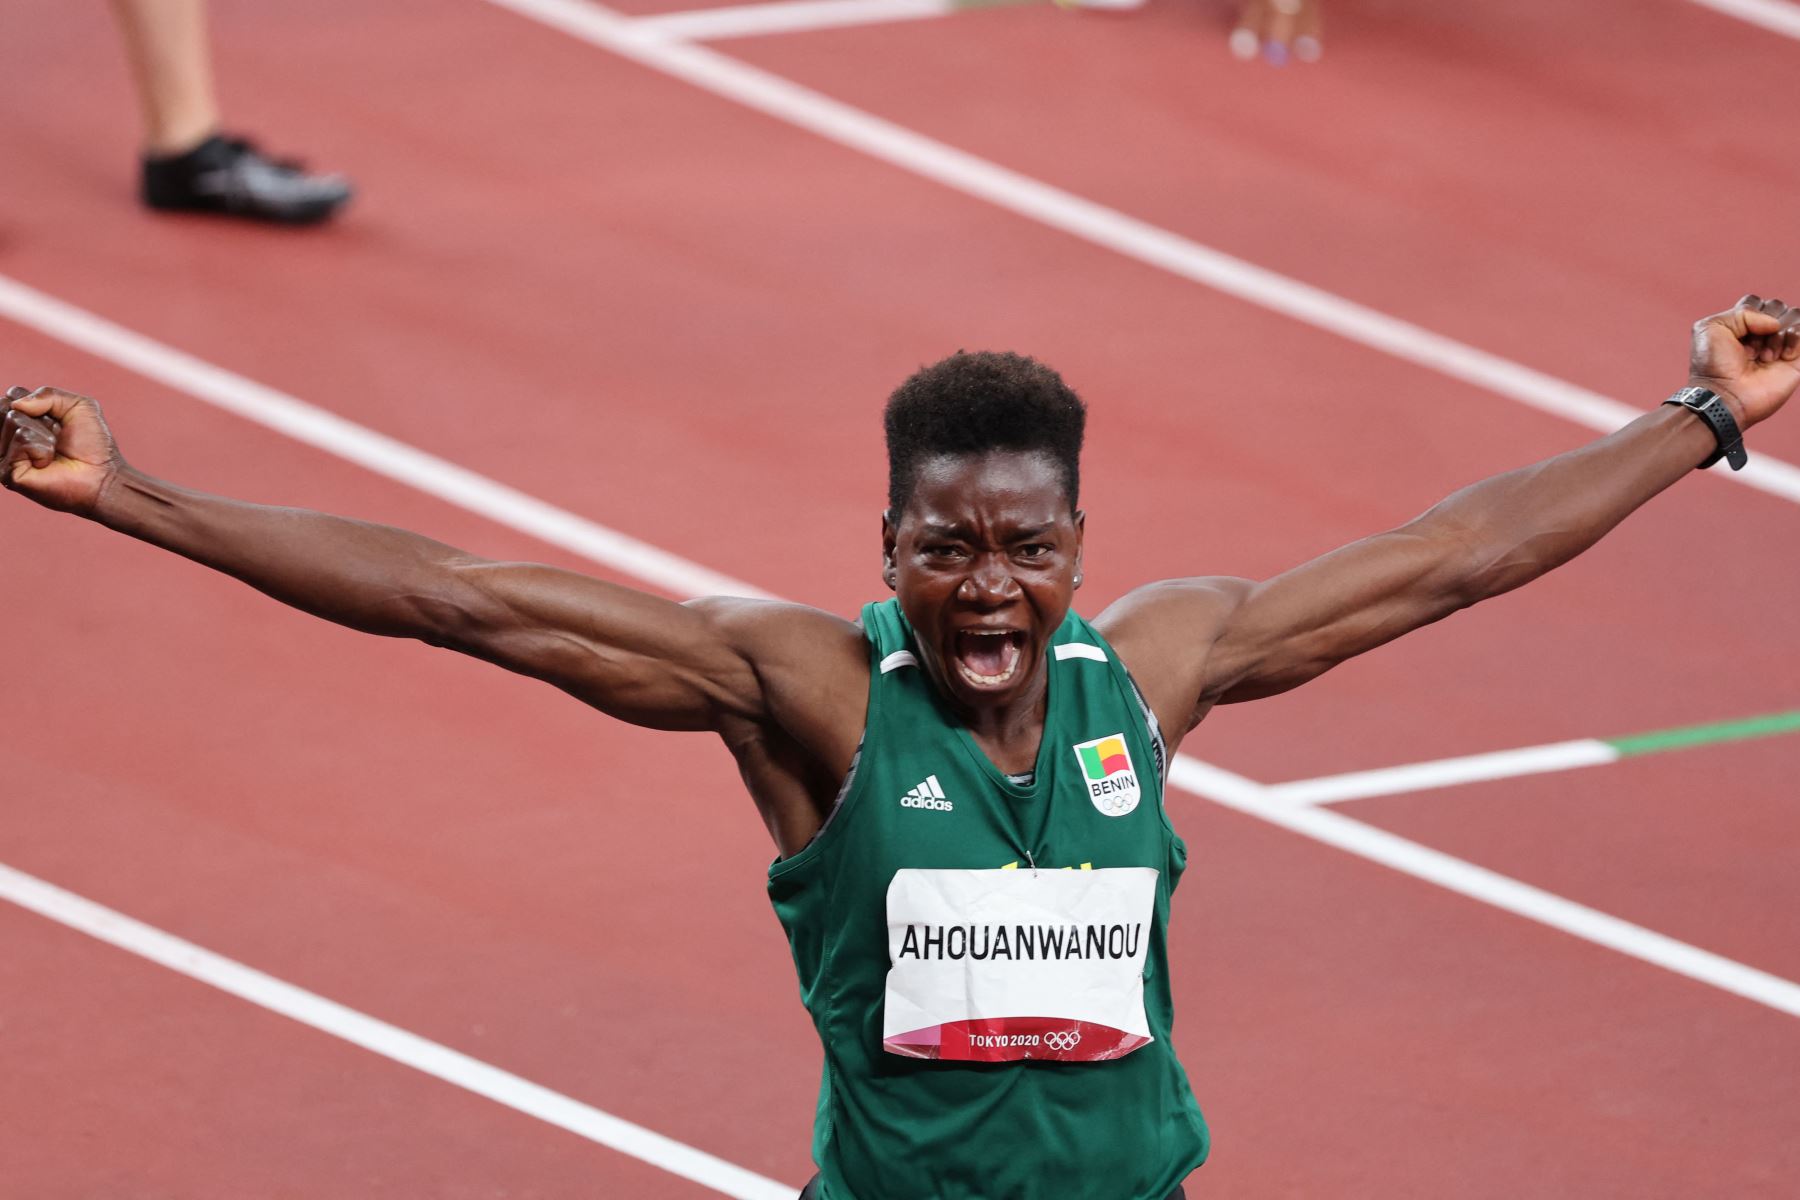 Odile Ahouanwanou de Benin reacciona después del heptatlón femenino 200m durante los Juegos Olímpicos de Tokio 2020.
Foto: AFP